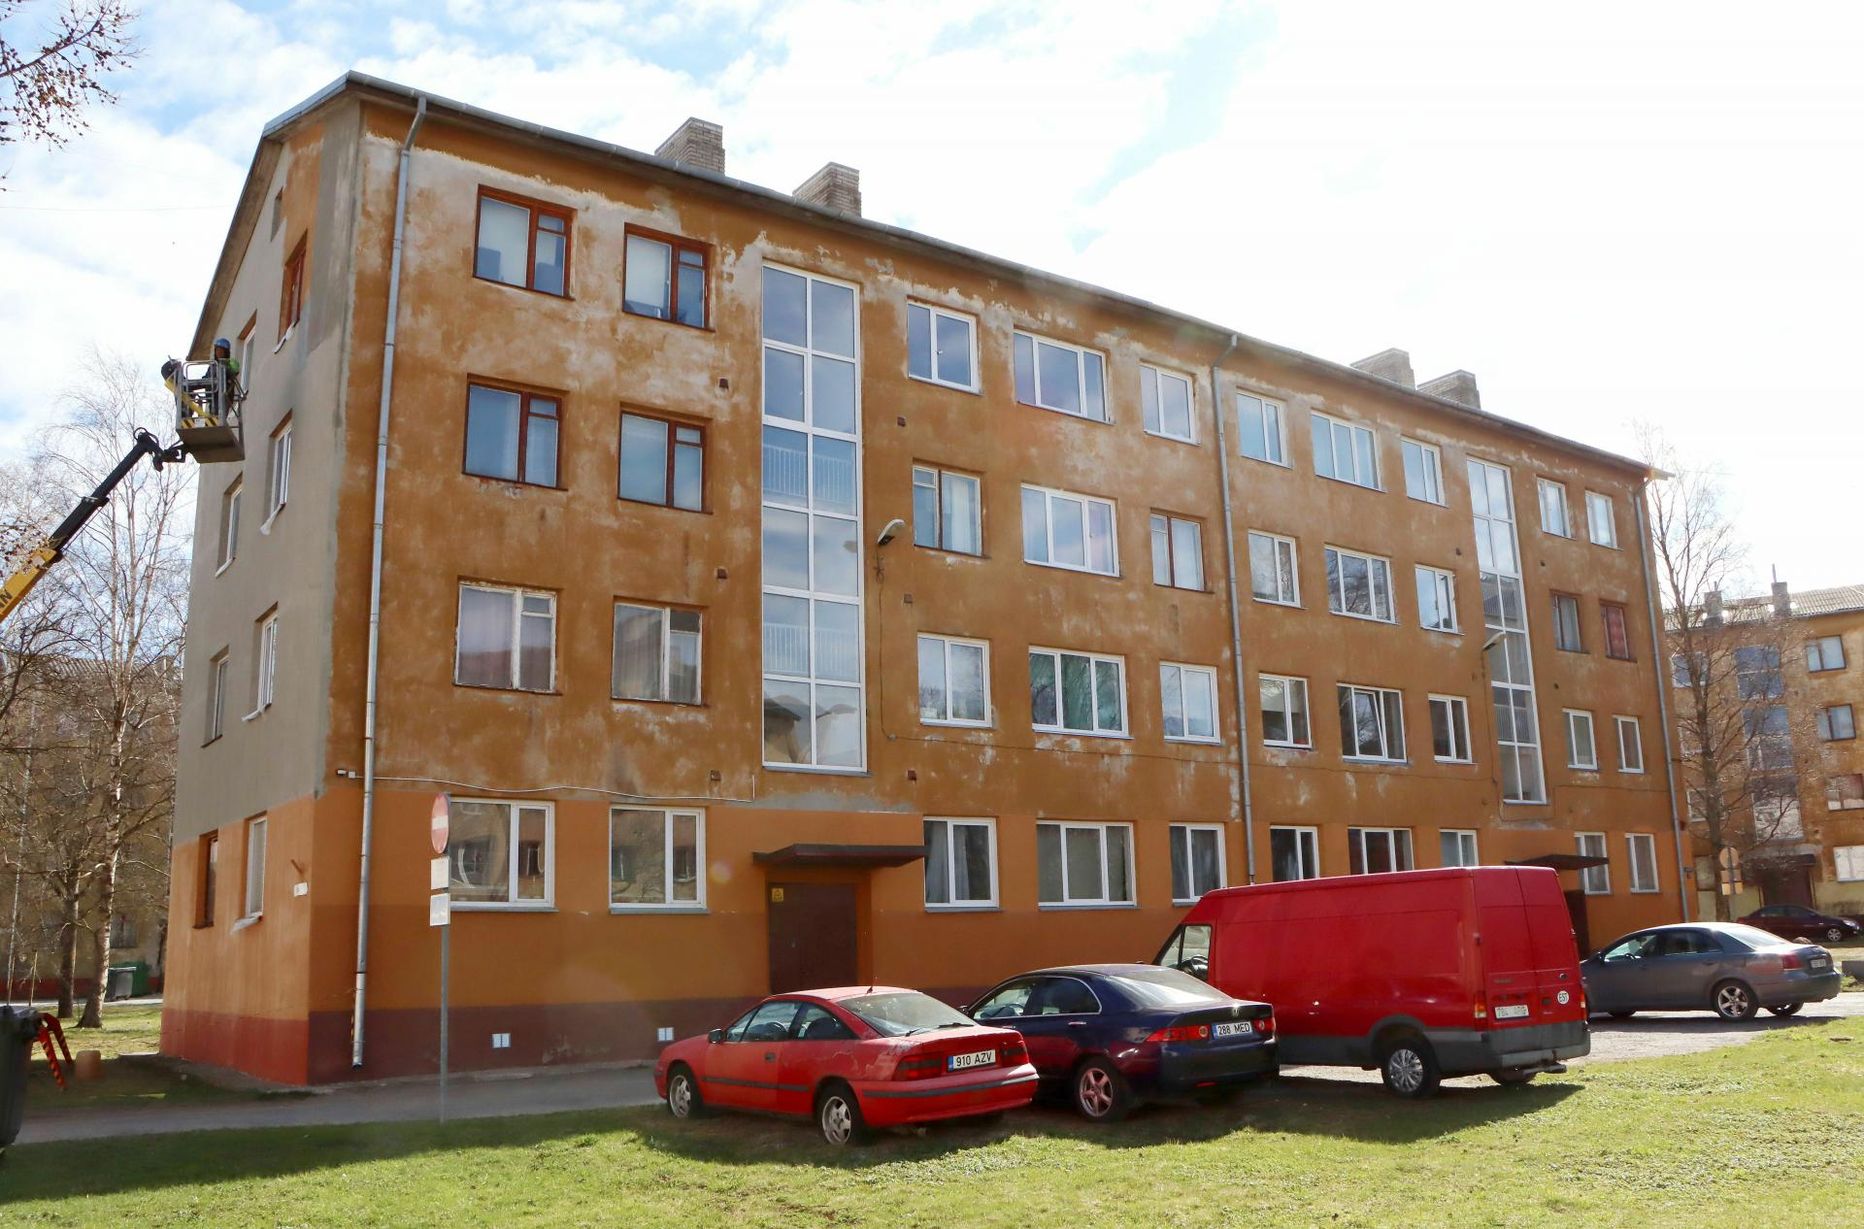 Kohtla-Järve Uus tn 1a majas oli üsna mitu Venemaa kodanikele kuulunud korterit, mille eest omanikud võlgu jäid. Lõpuks kinkisid nad võlakorterid ühistule.